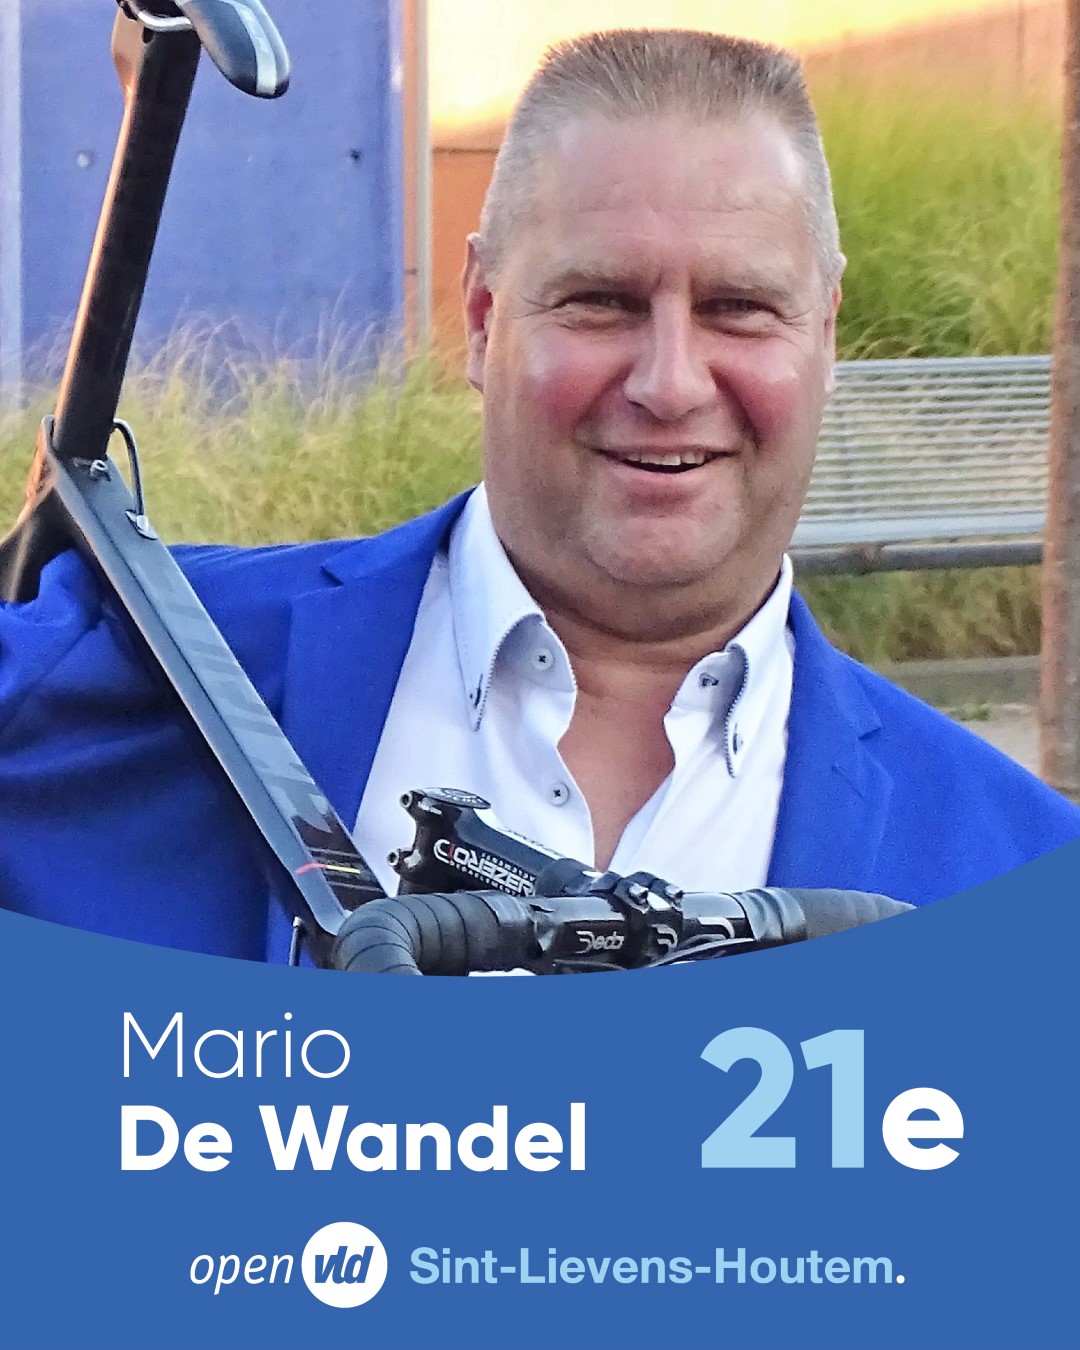 Mario De Wandel